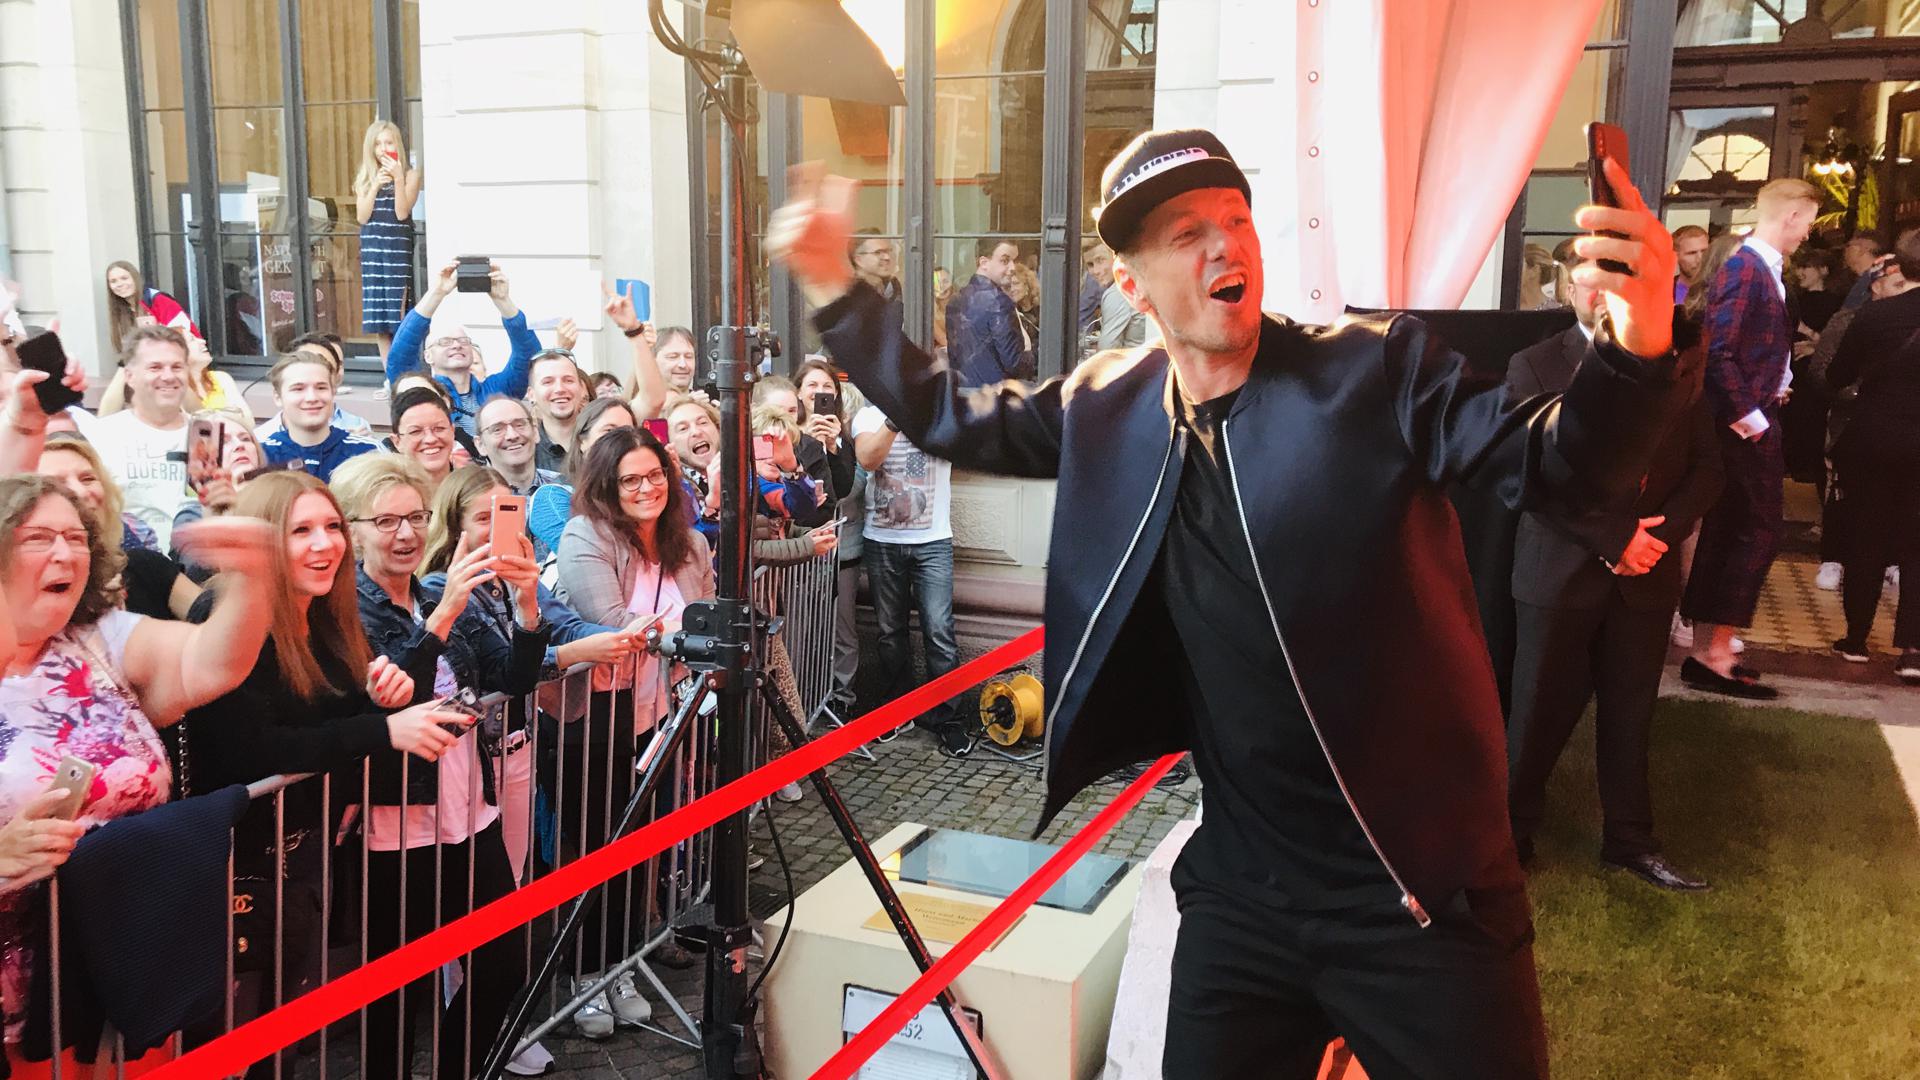 Stars in Baden-Baden: Michi Beck von den Fanta 4 macht beim Popfestival 2019 ein Selfi mit Fans.